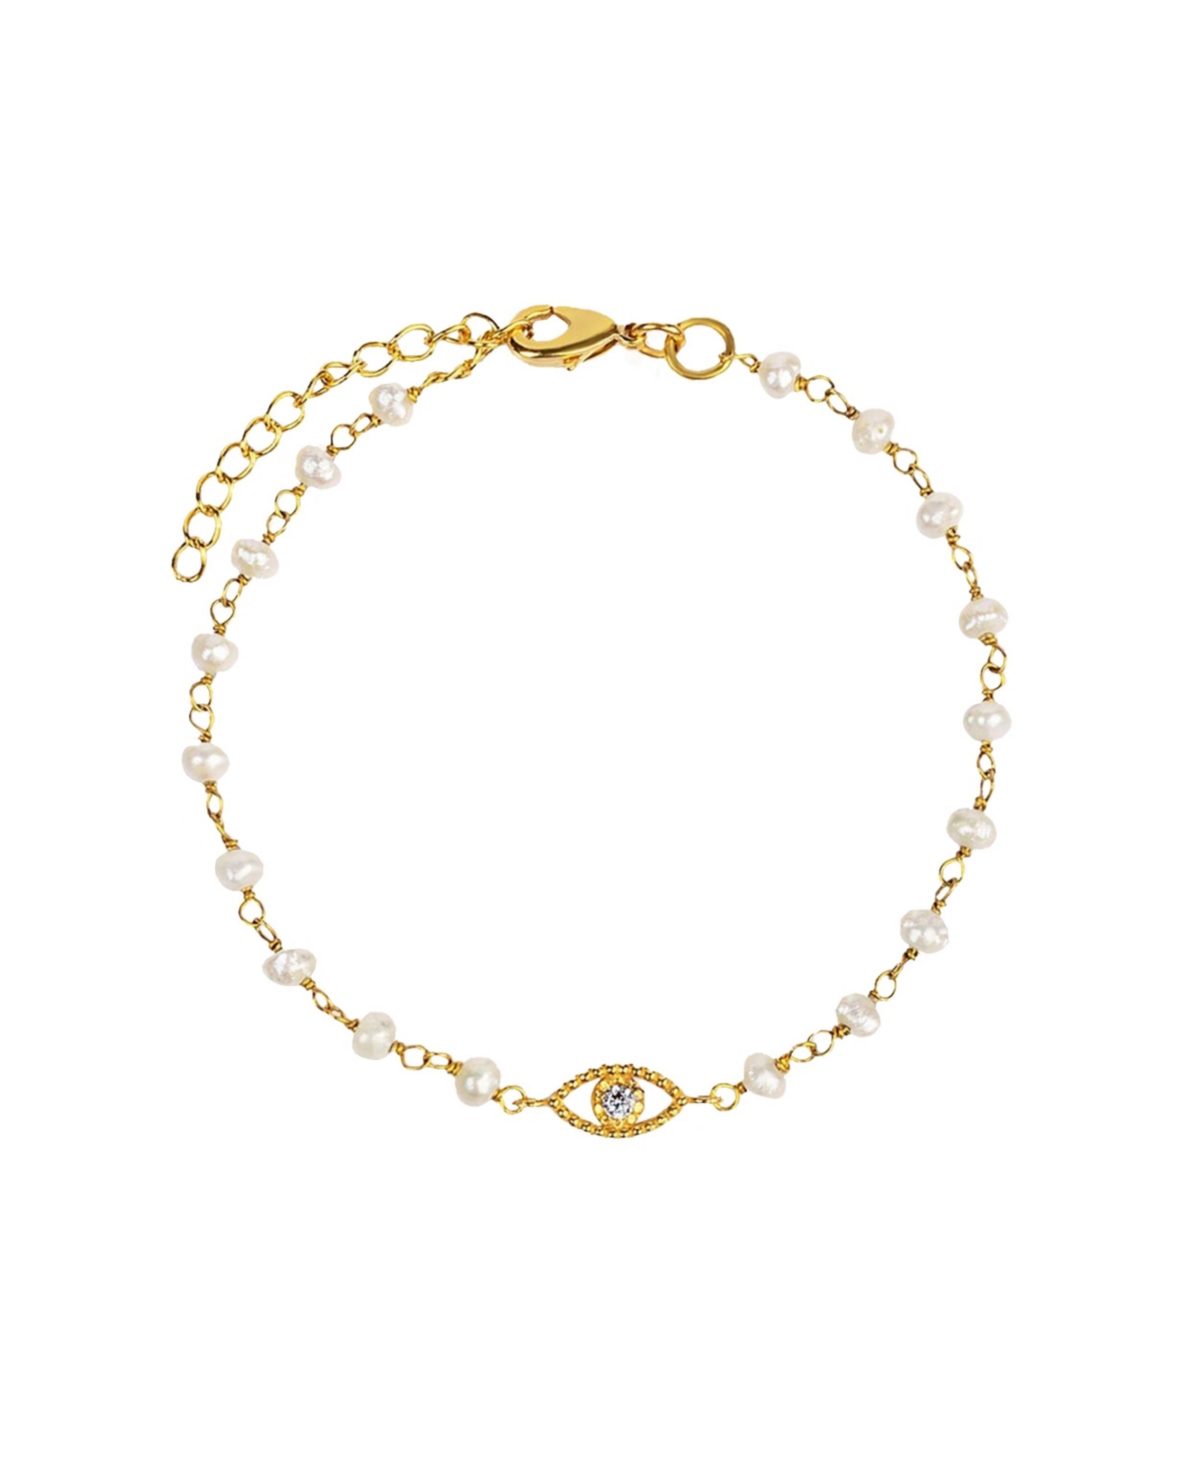 Dreamlike Protection - Pearl Evil Eye Charm Bracelet - Gold/white